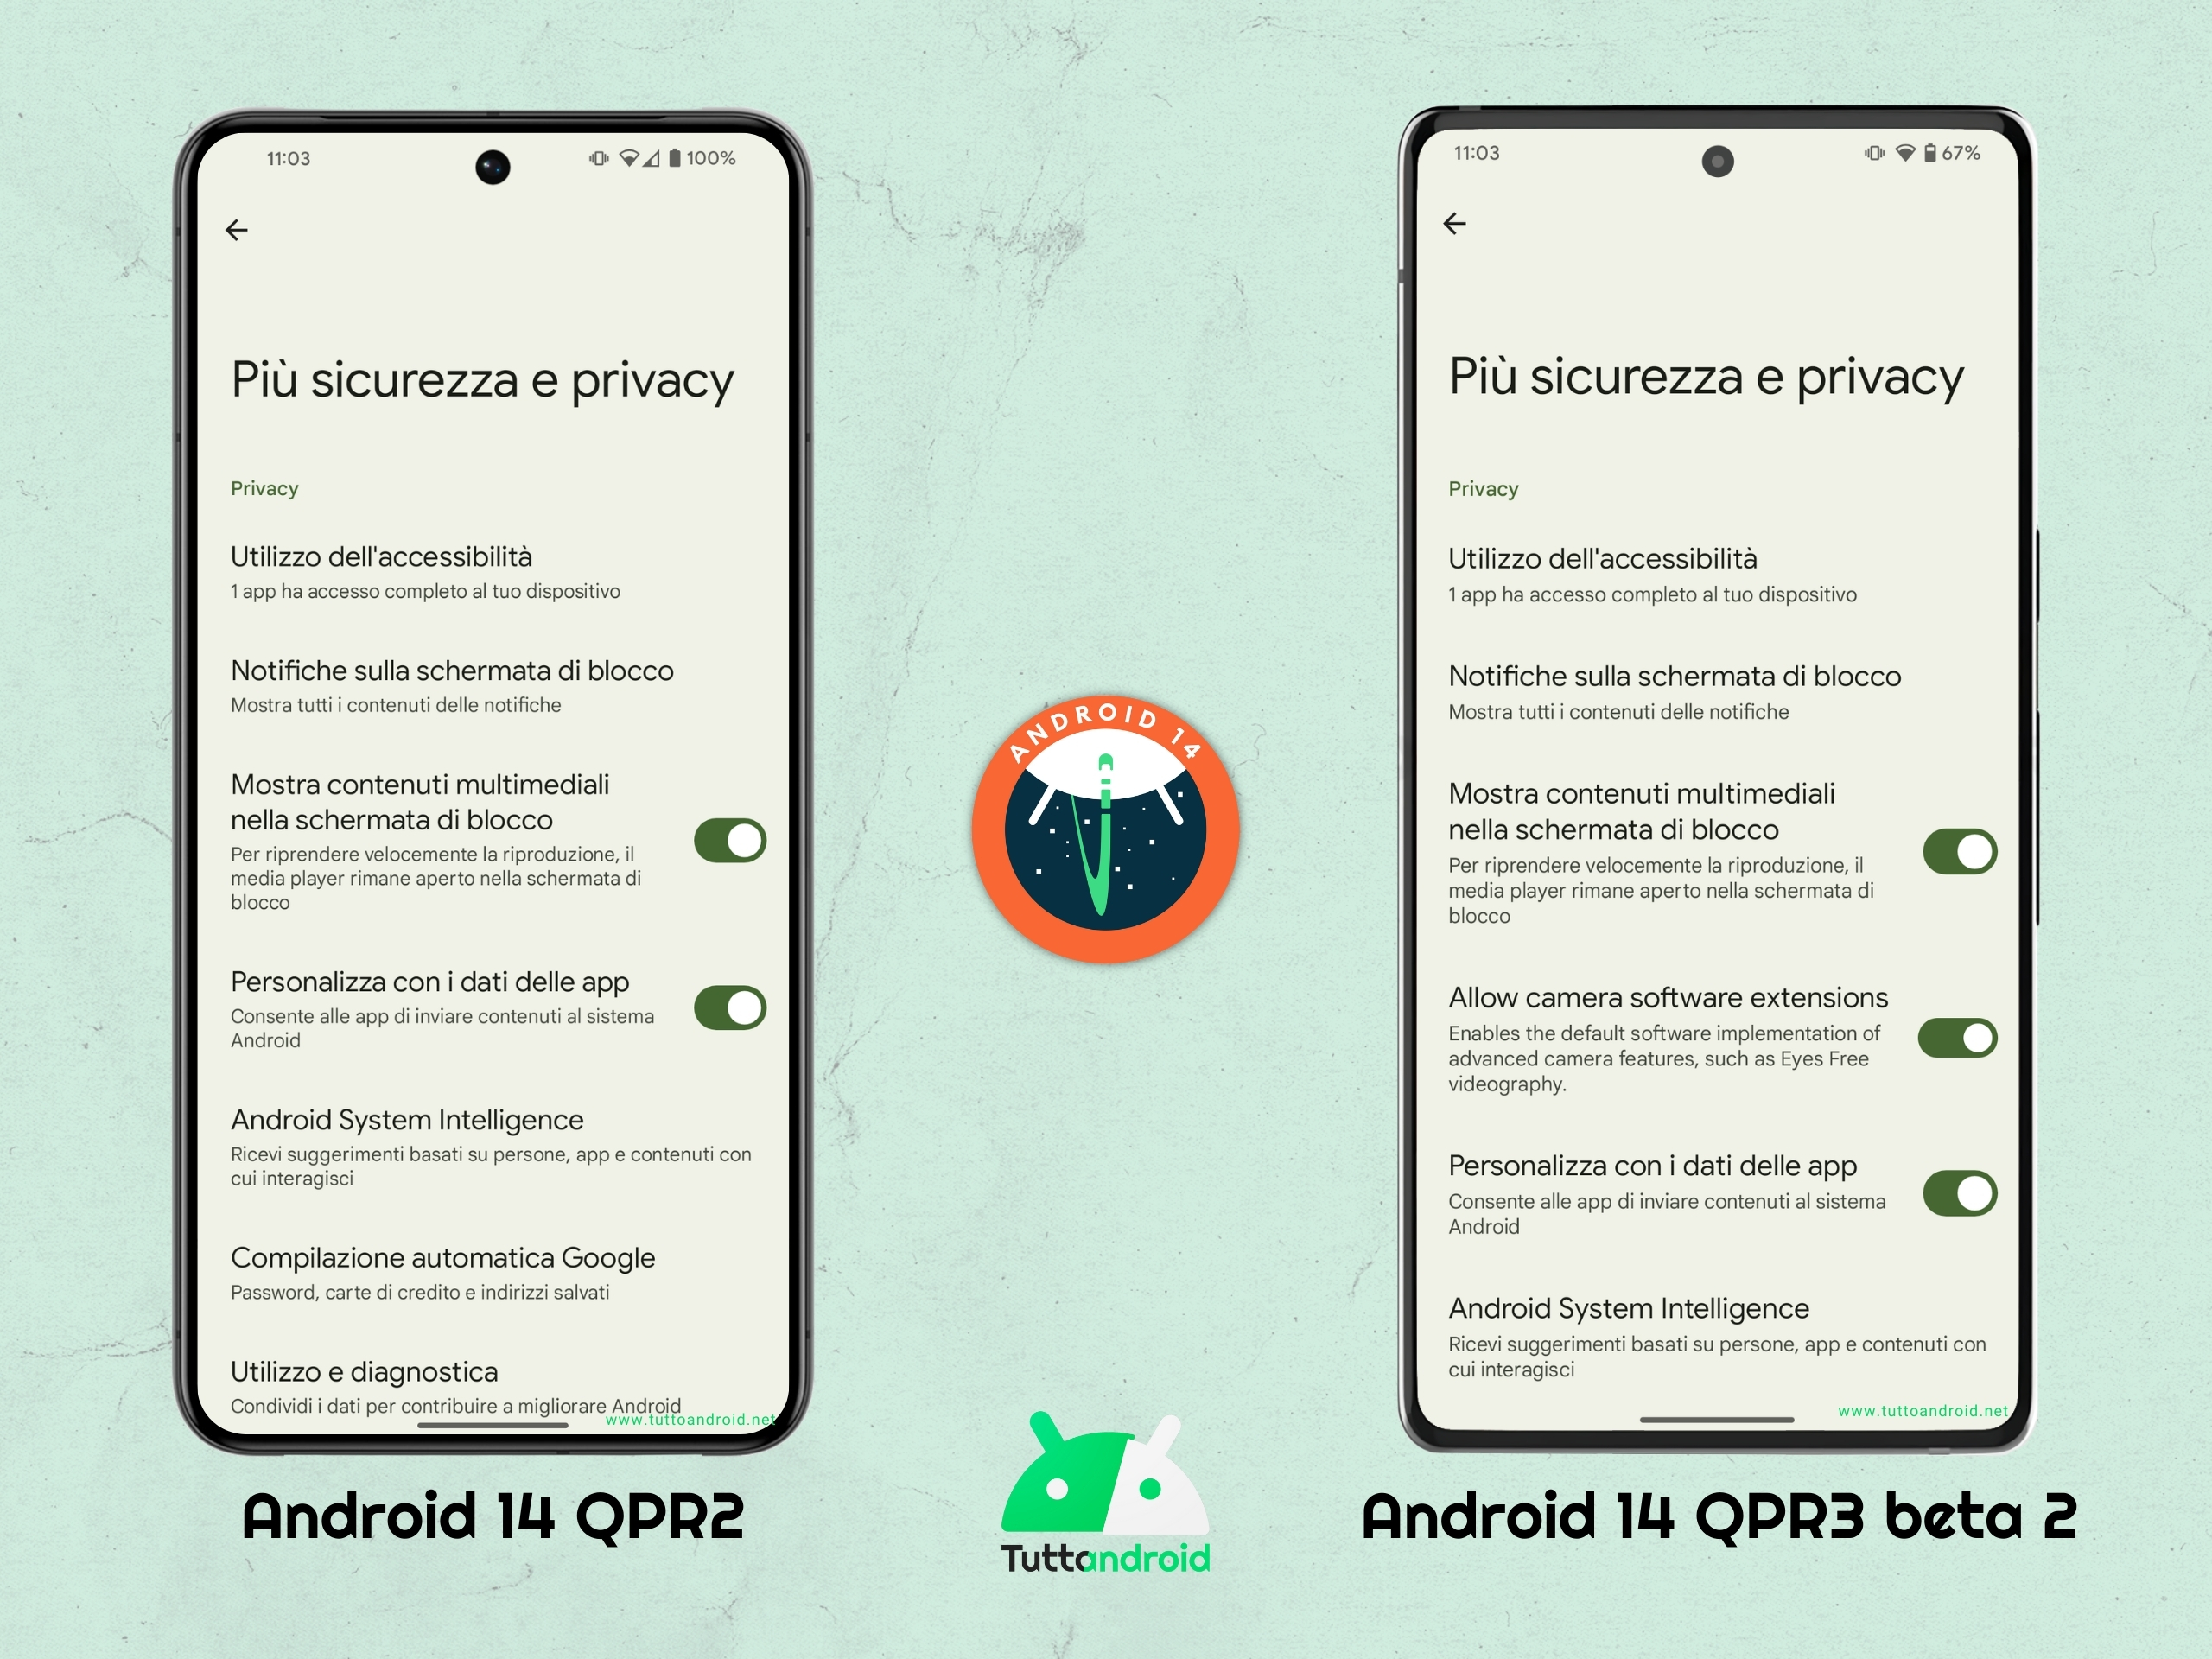 Android 14 QPR3 beta 2 - Più sicurezza e privacy